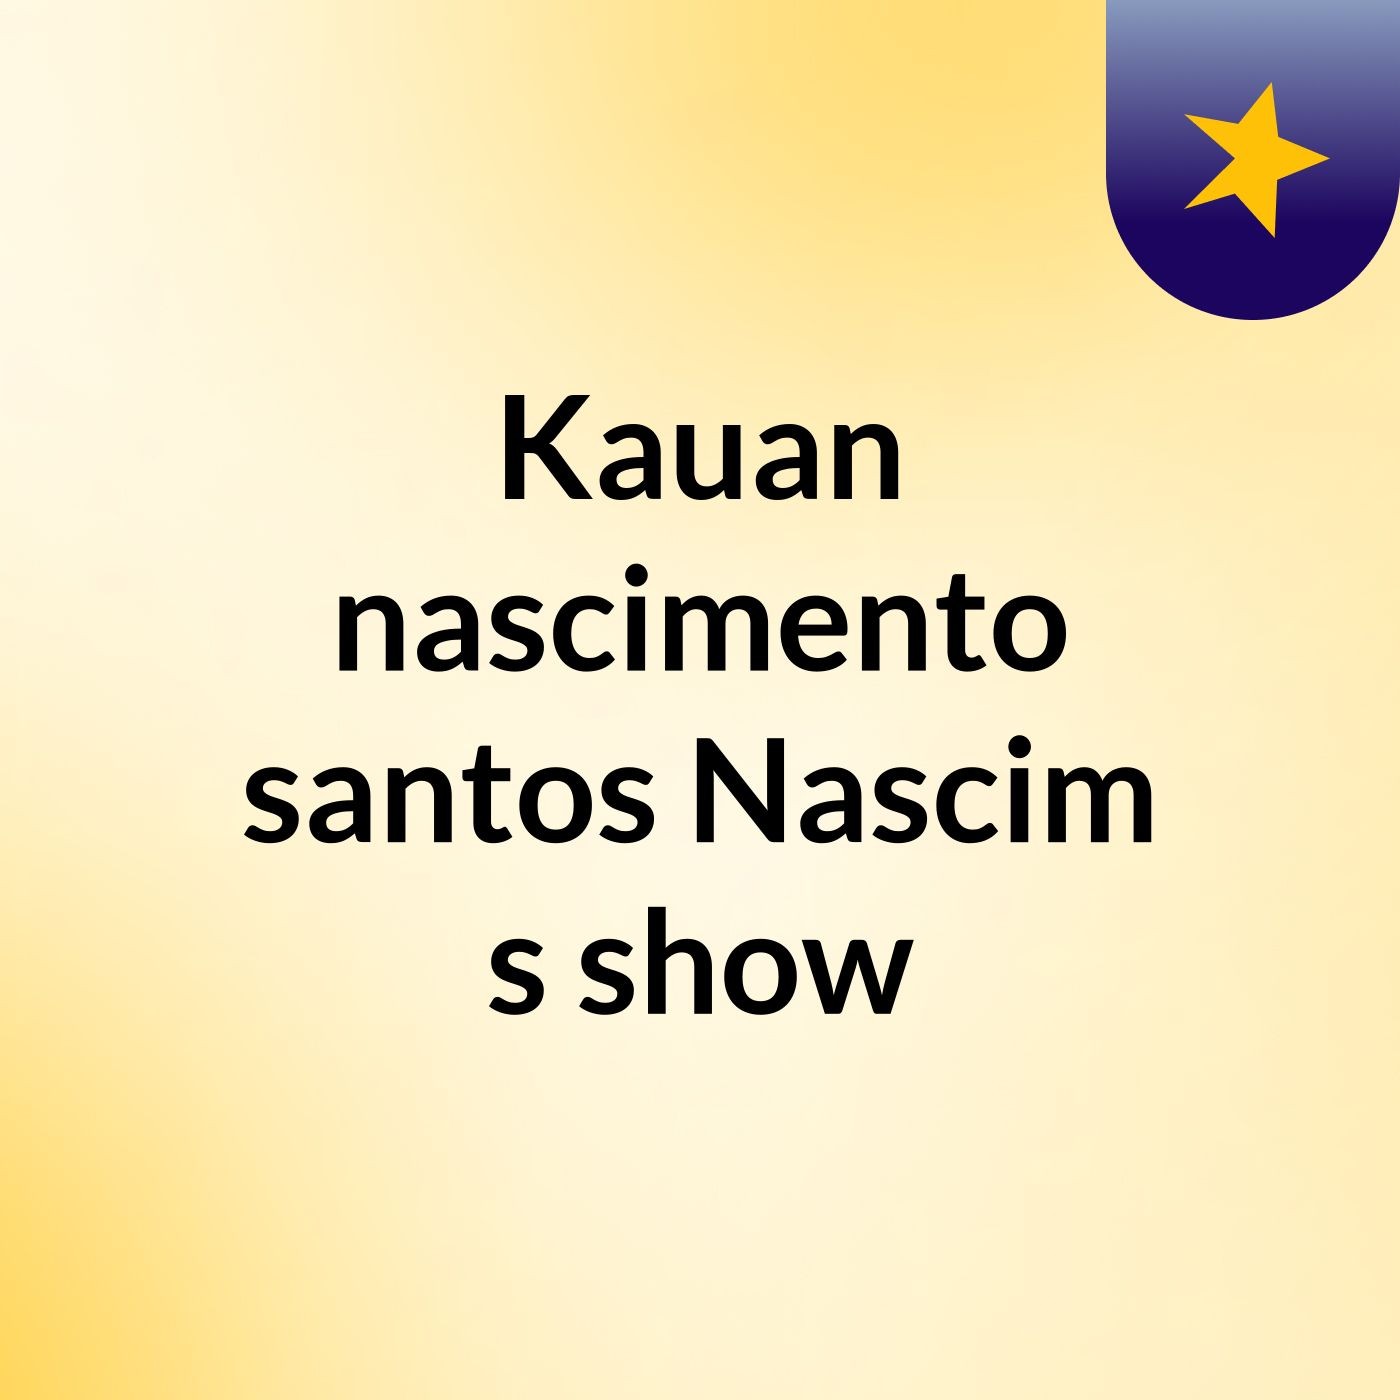 Kauan nascimento santos Nascim's show